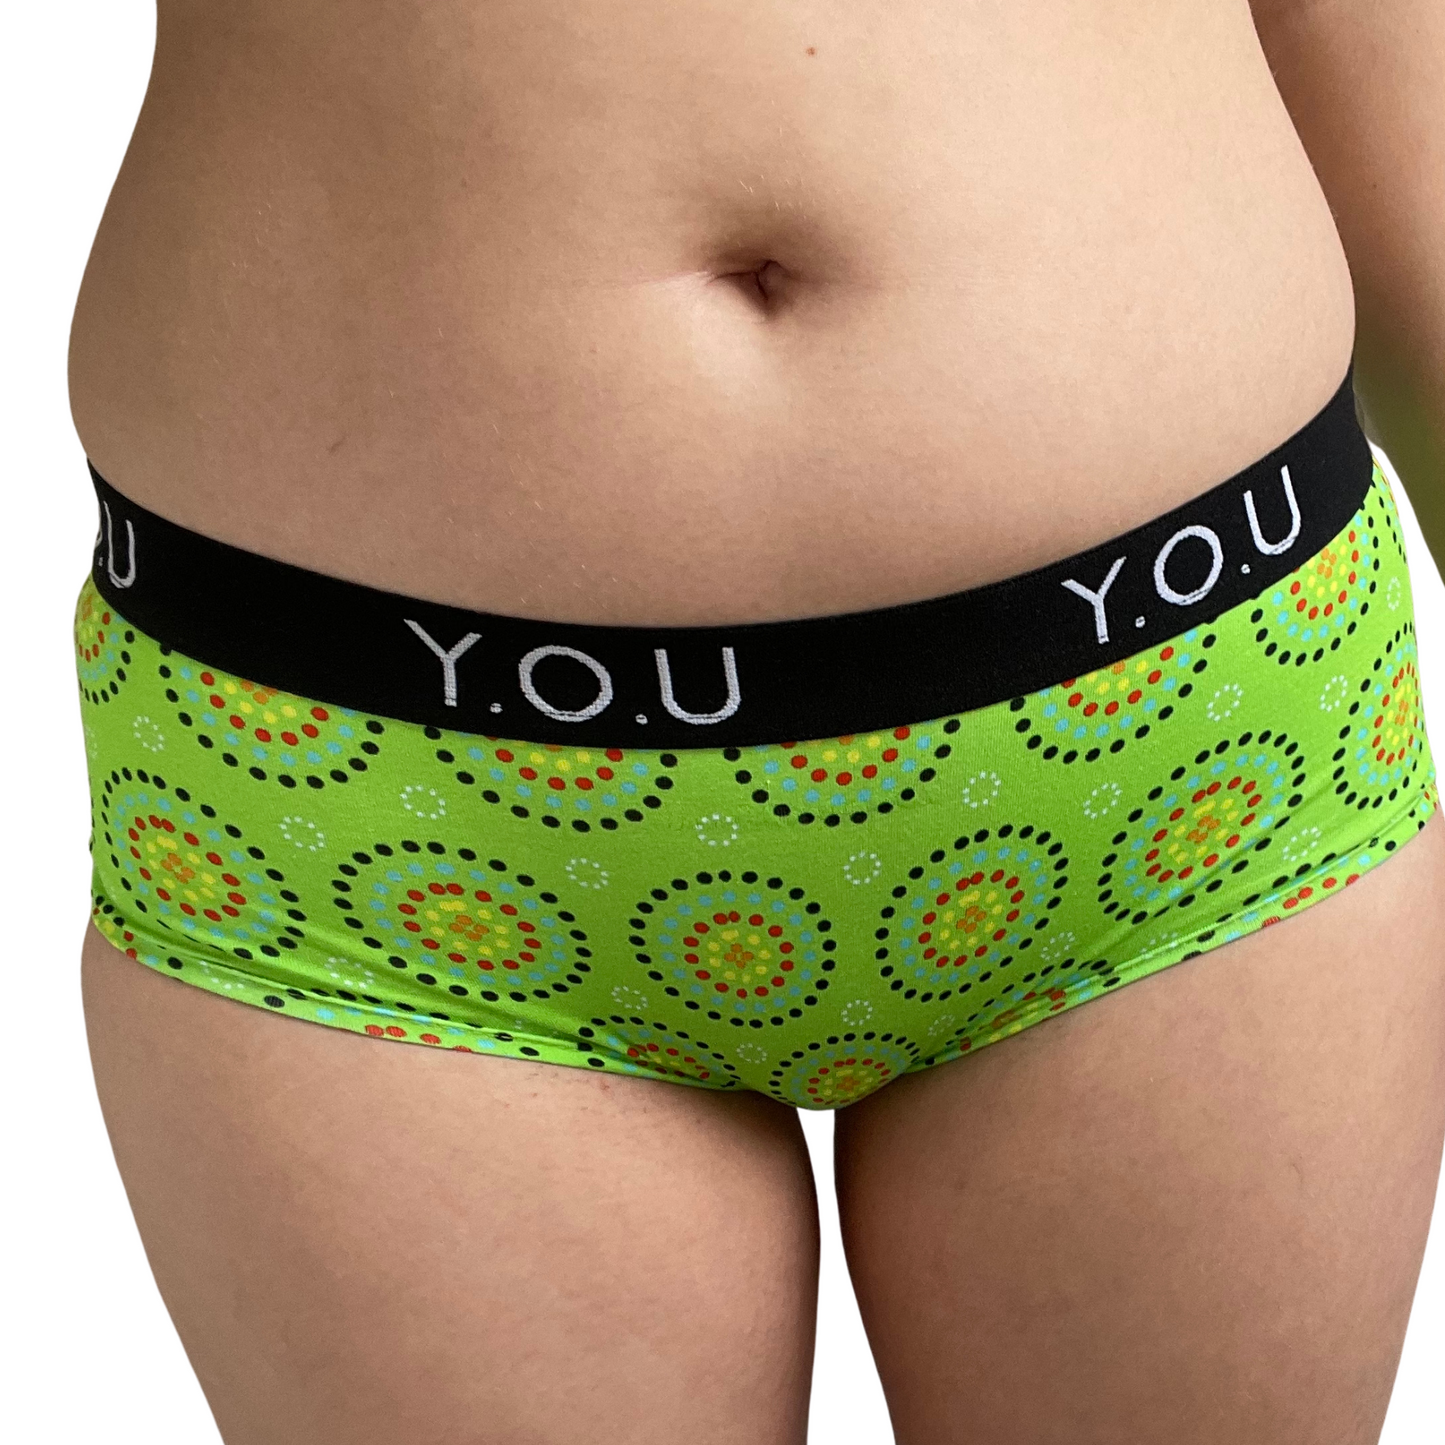 Women’s organic cotton boy shorts with Y.O.U elastic - Green Mara design